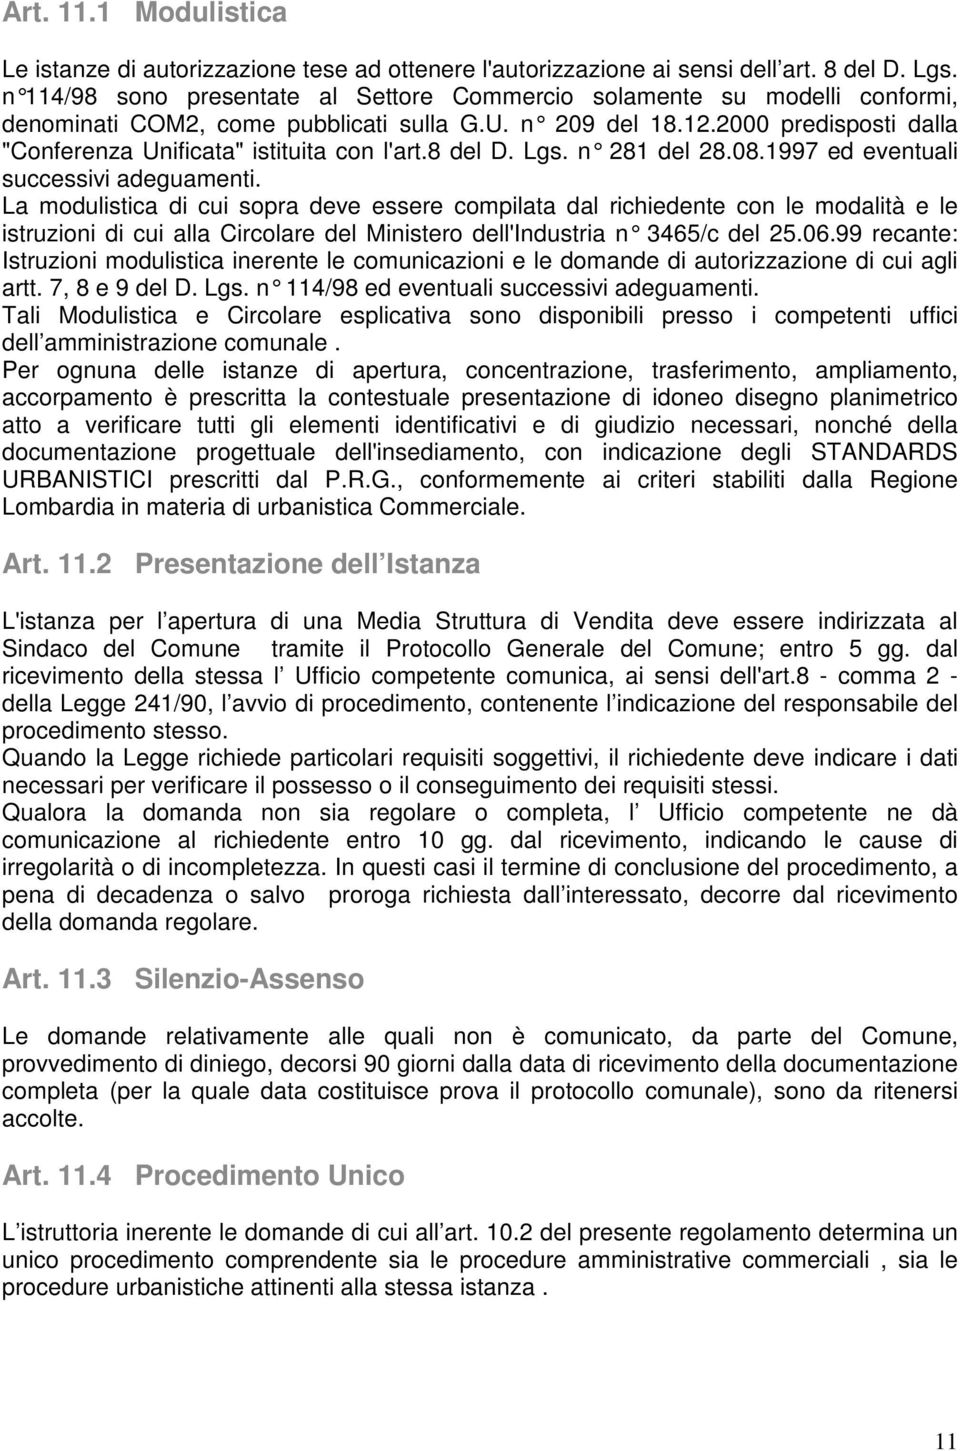 2000 predisposti dalla "Conferenza Unificata" istituita con l'art.8 del D. Lgs. n 281 del 28.08.1997 ed eventuali successivi adeguamenti.